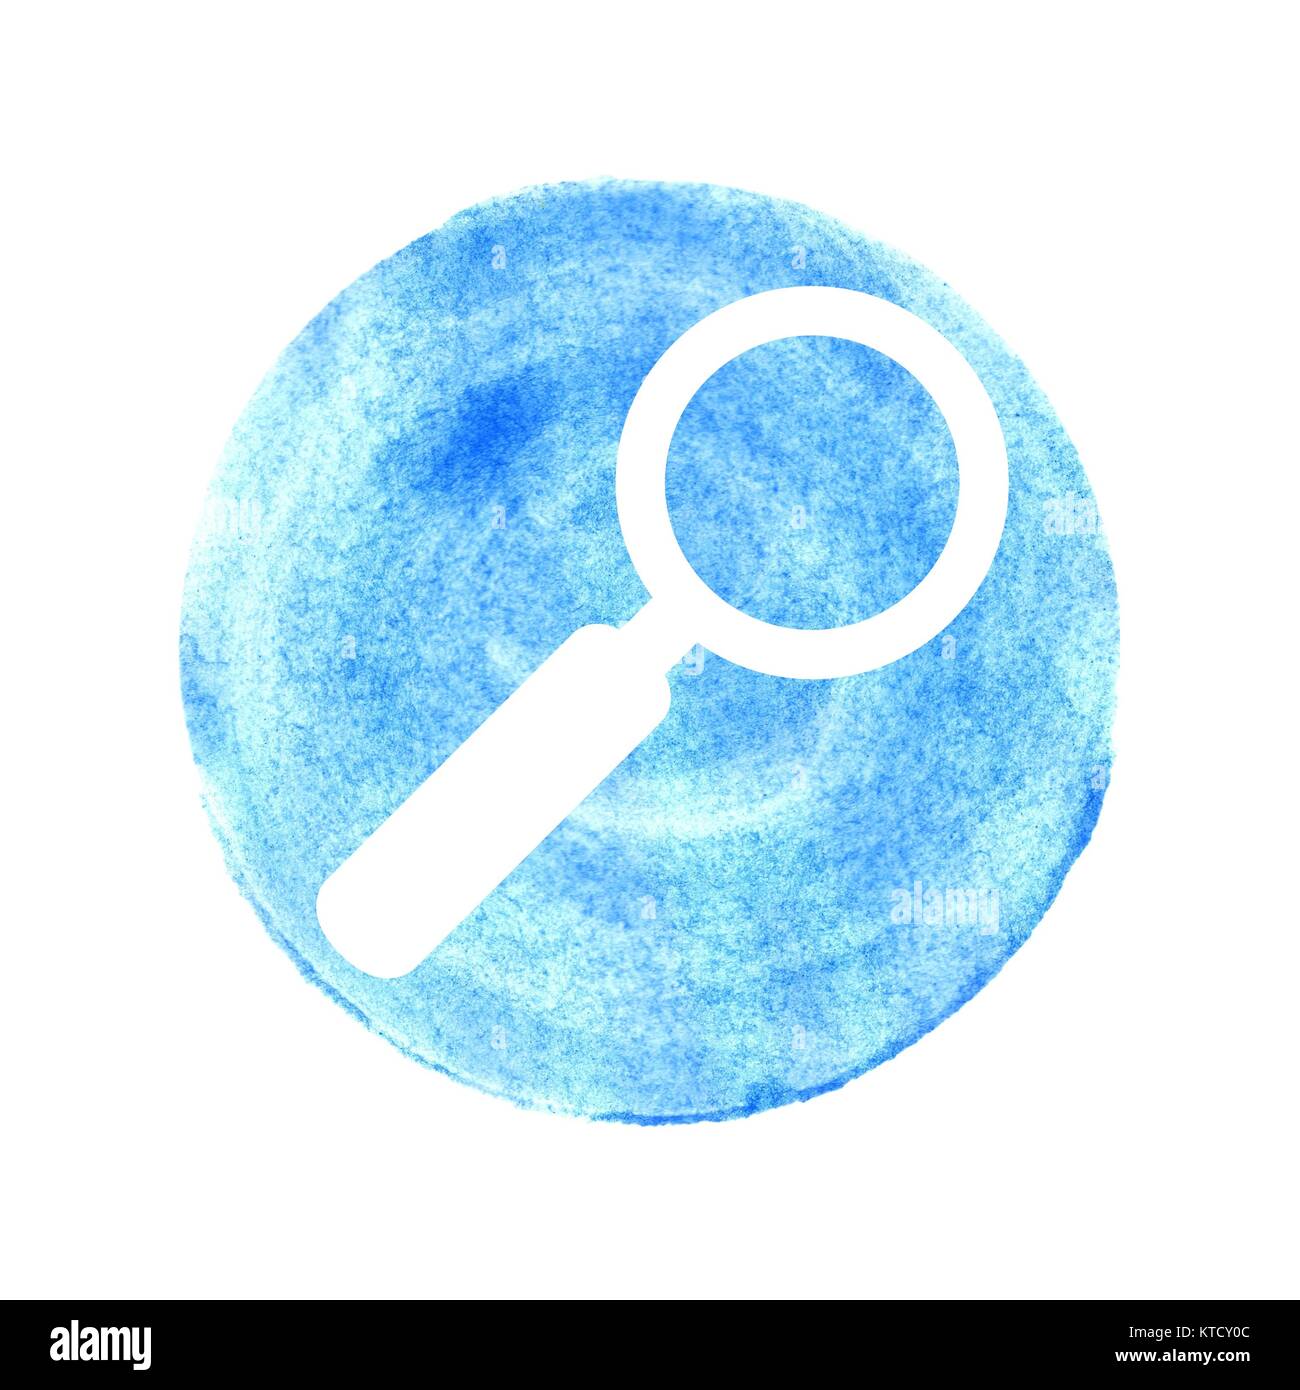 Runder isolierter blauer Kreis aus Wasserfarbe und Lupen Symbol Stock Photo